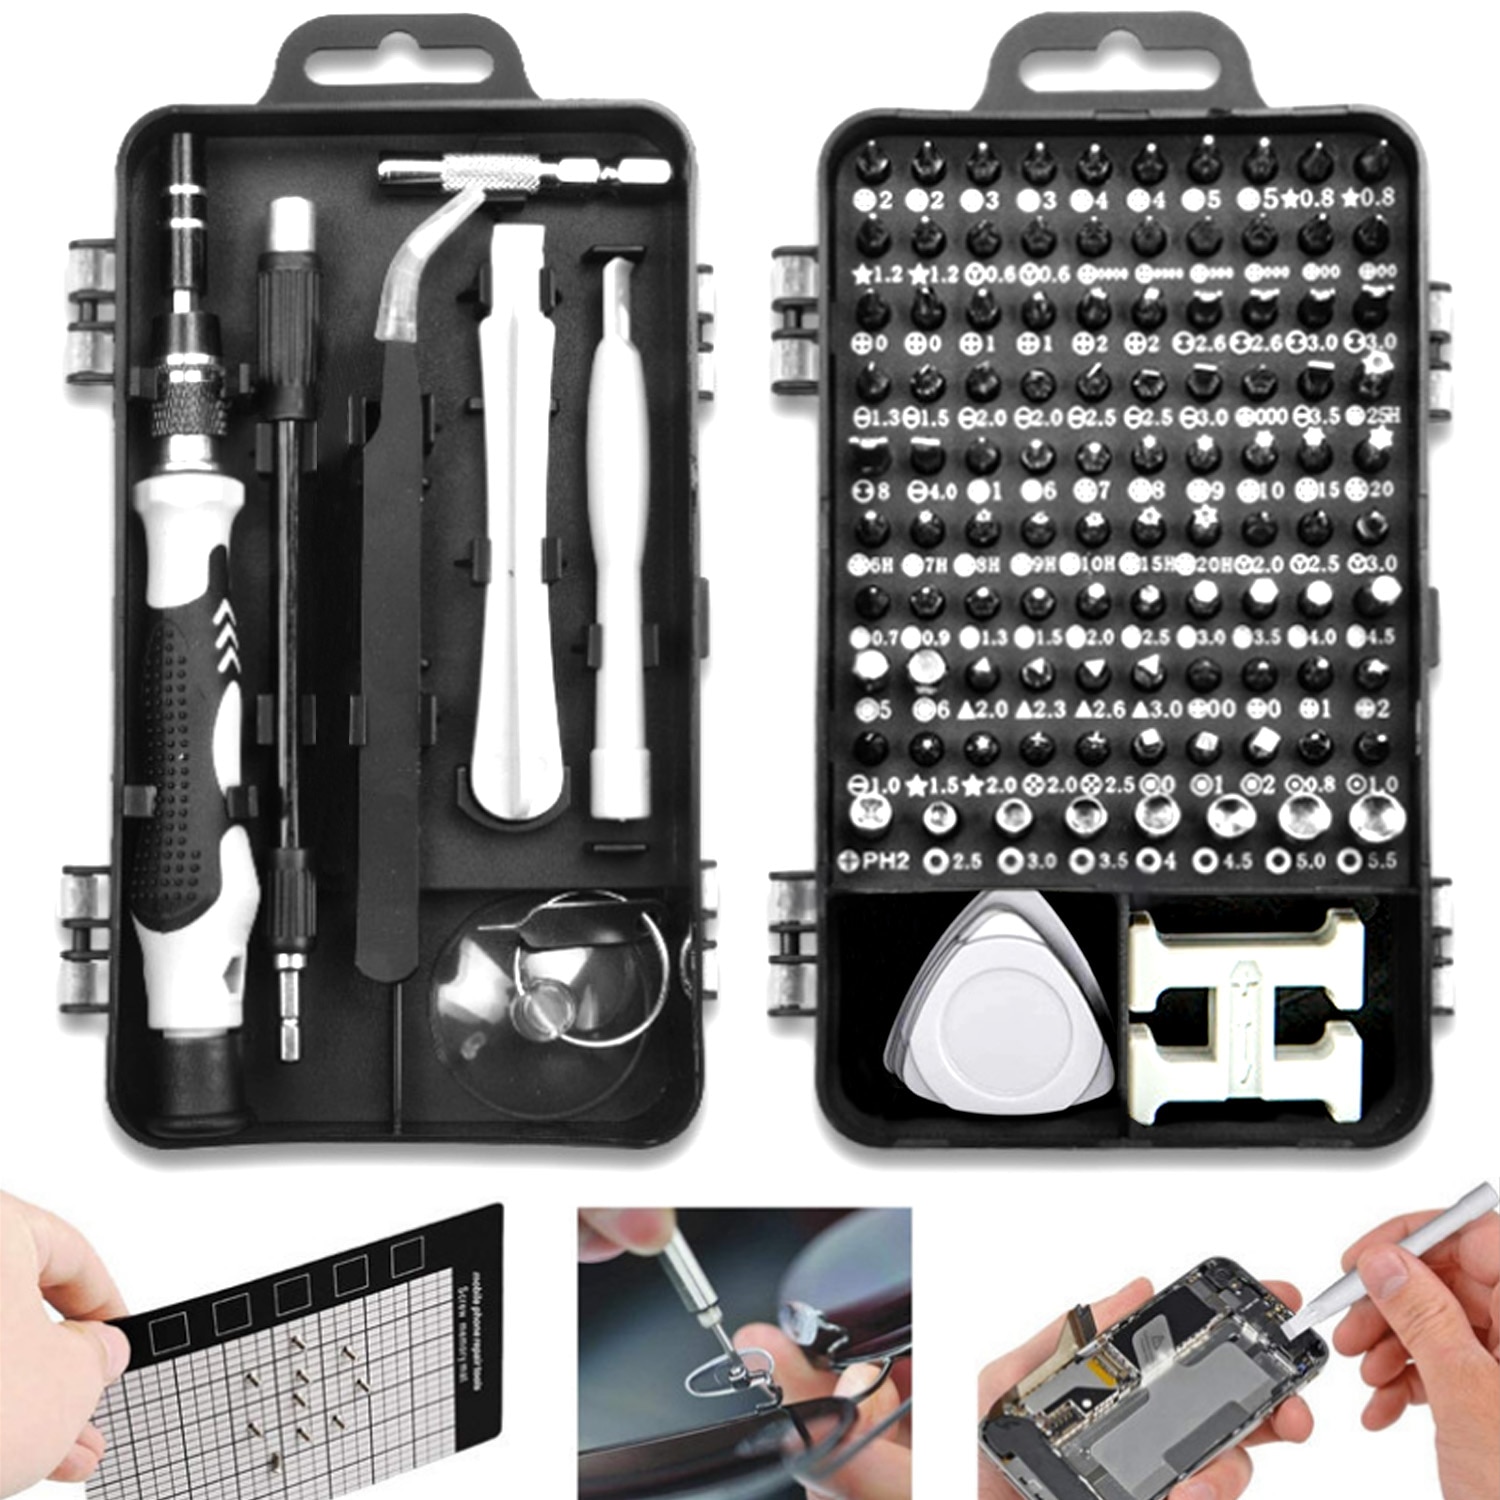 115 In 1 Multifunctionele Schroevendraaier Set Telefoon Reparatie Tools Kit Voor Mobiele Smartphone Tablet Laptop Bril Horloge Elektronische